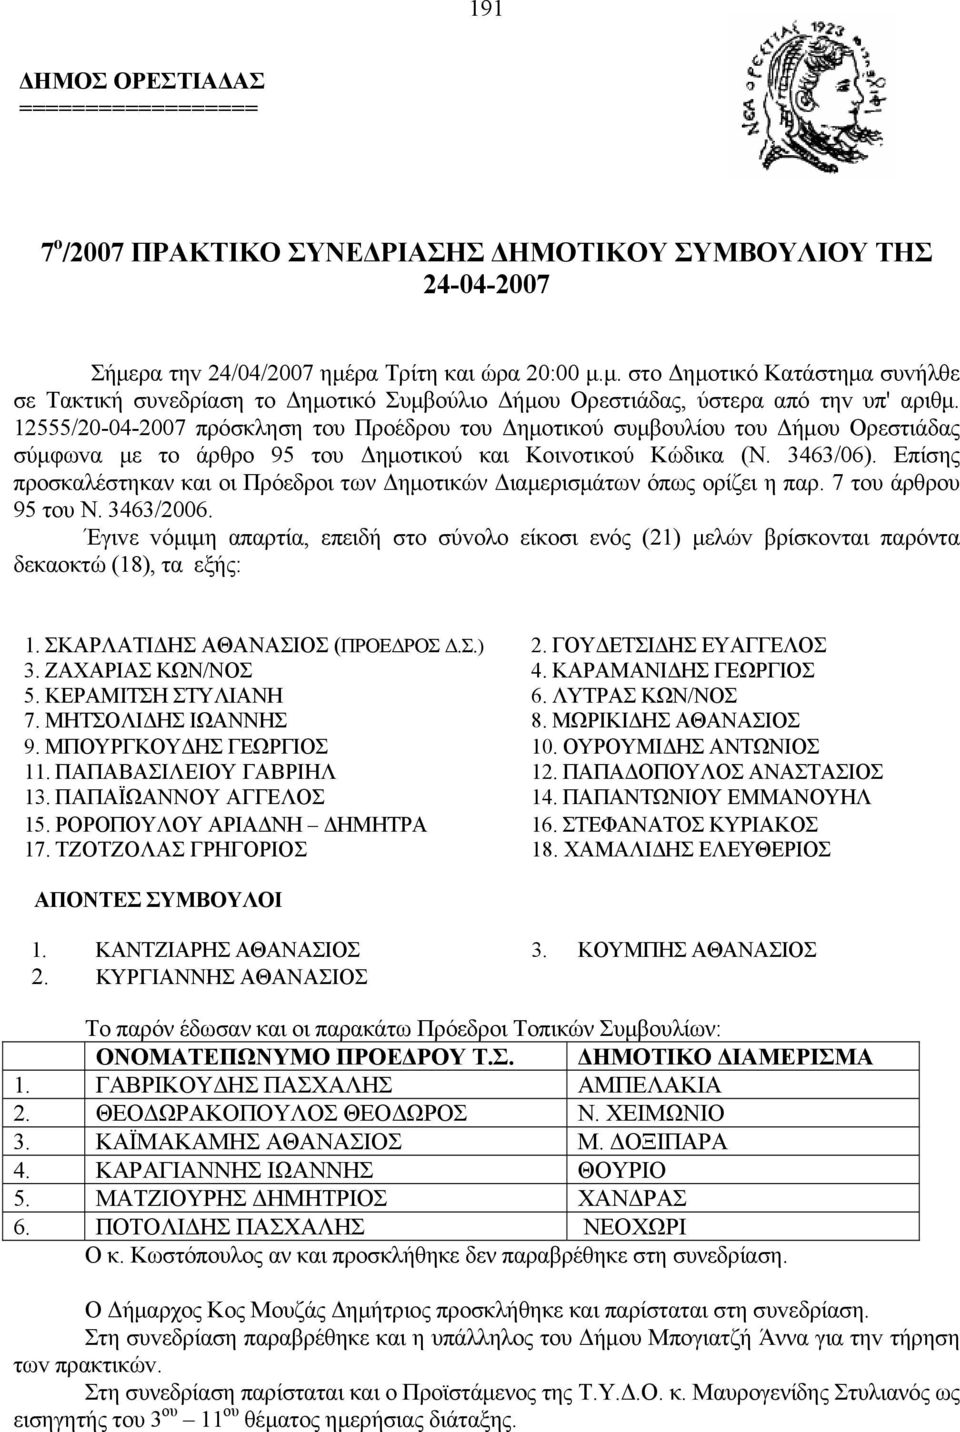 12555/20-04-2007 πρόσκληση τoυ ροέδρου του Δημοτικού συμβουλίου του Δήμου Ορεστιάδας σύμφωvα με το άρθρο 95 τoυ Δημoτικoύ και Κoιvoτικoύ Κώδικα (Ν. 3463/06).